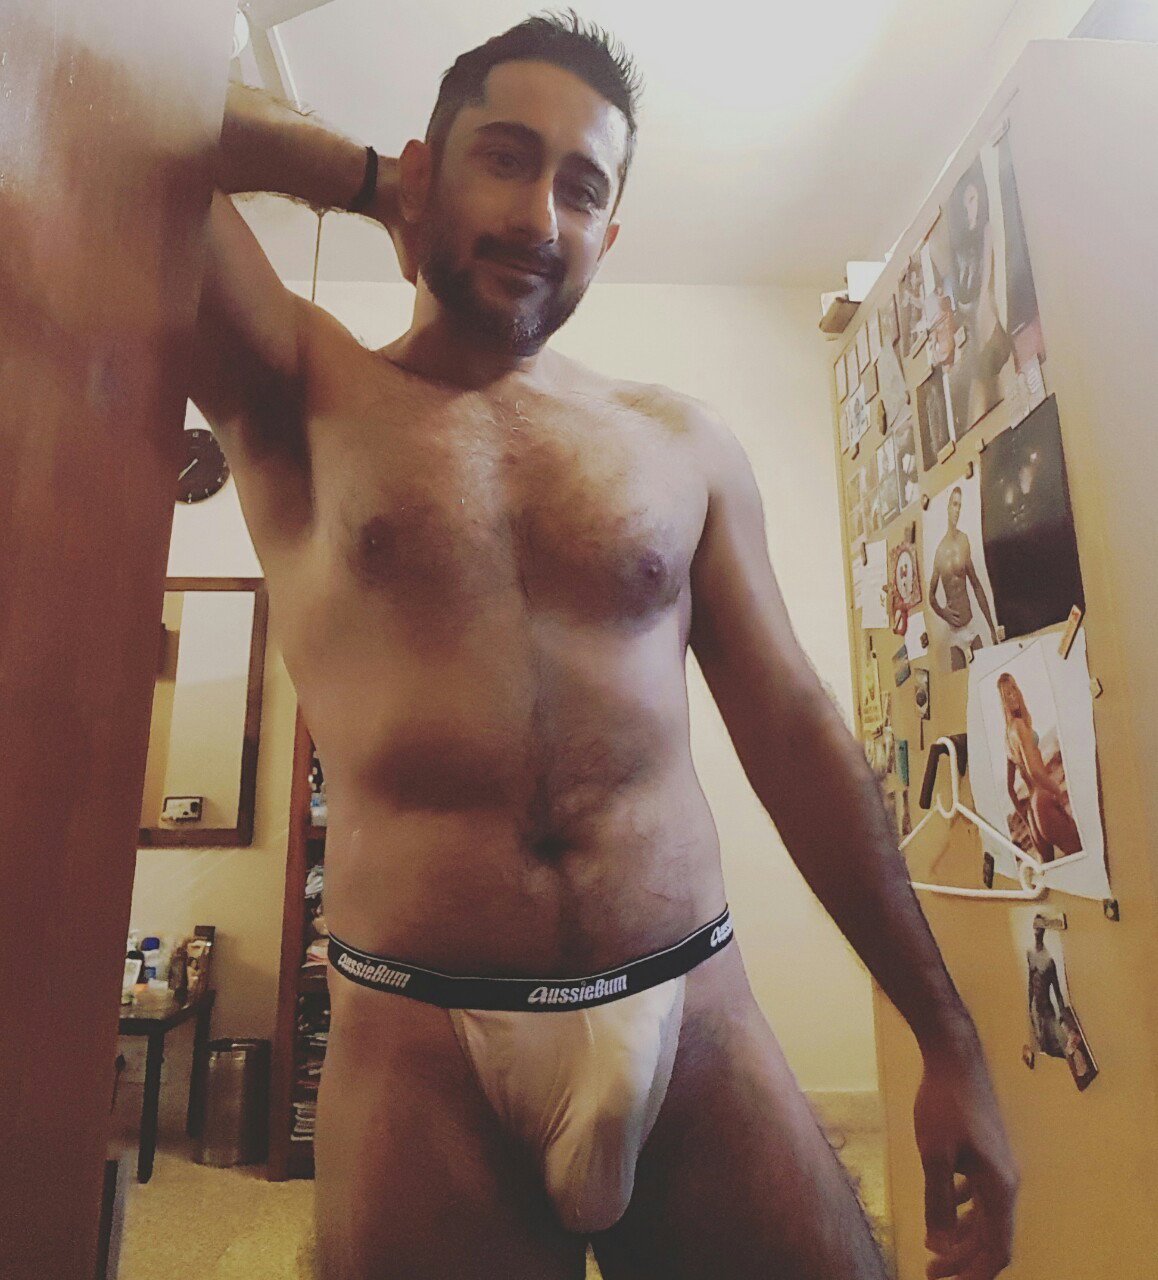 Photo by StevensonBalk with the username @StevensonBalk,  October 16, 2016 at 9:13 AM and the text says 'undieguyblog:

Daily underwear pics at Undie Guy on Instagram. Vimeo.Com/undieguy 

#aussiebum #skin #underwear #undieguy #sexyguys #bulge'